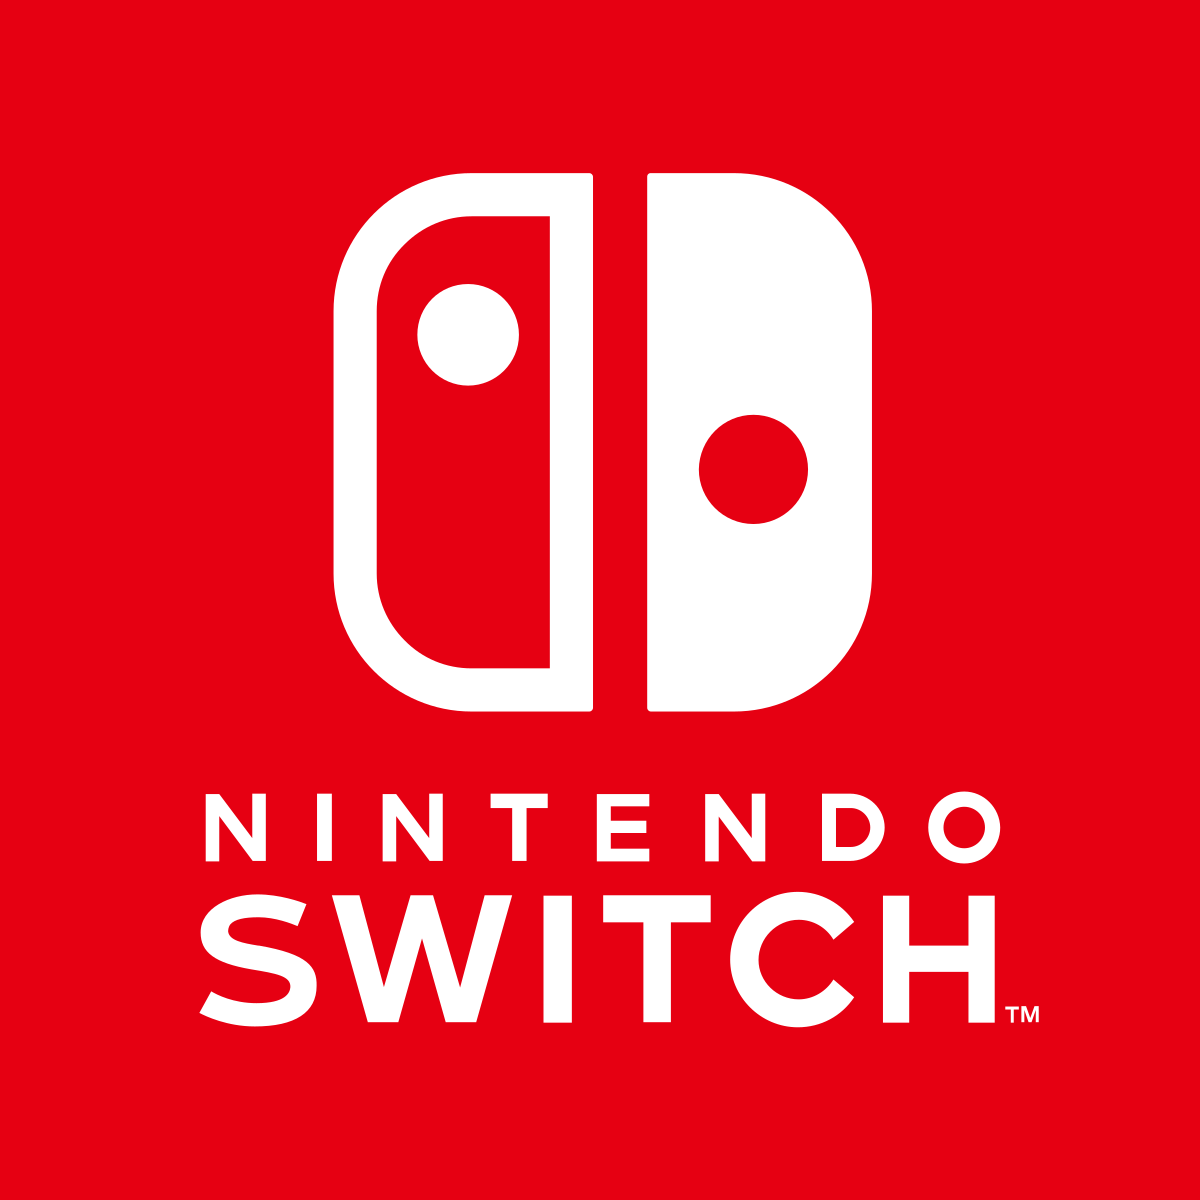 Switch vendute 4.70 milioni di console, confermandosi come un grande successo nintendo pro controllers uno nis america